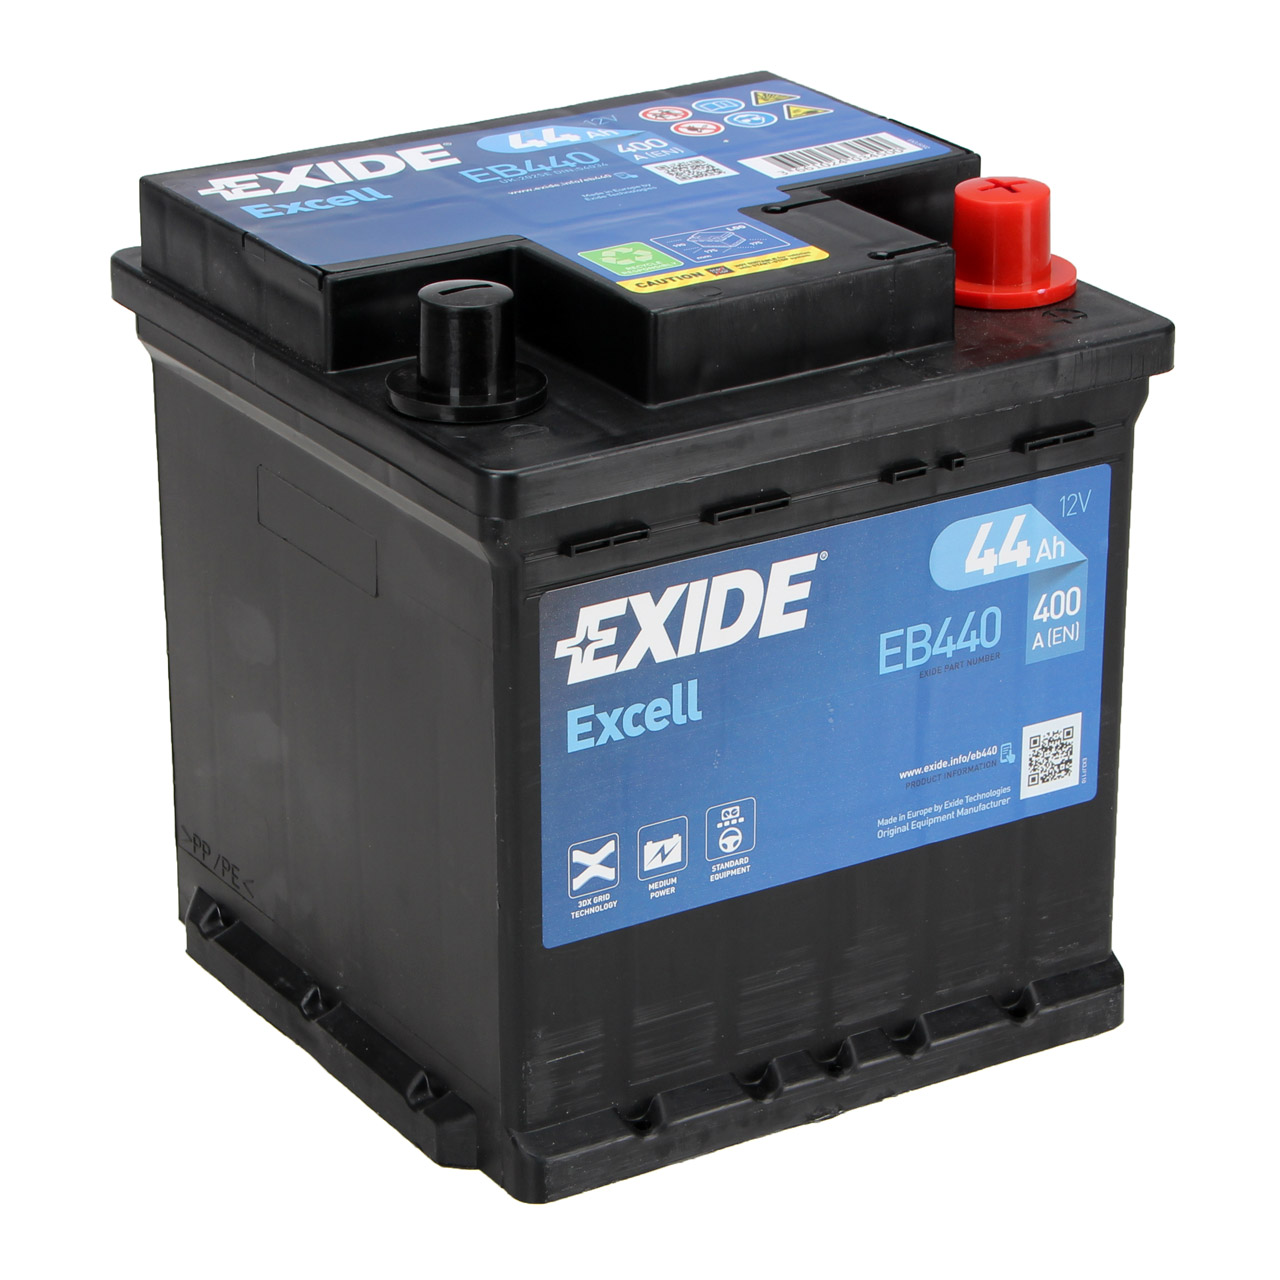 EXIDE Starterbatterien / Autobatterien - EB440 